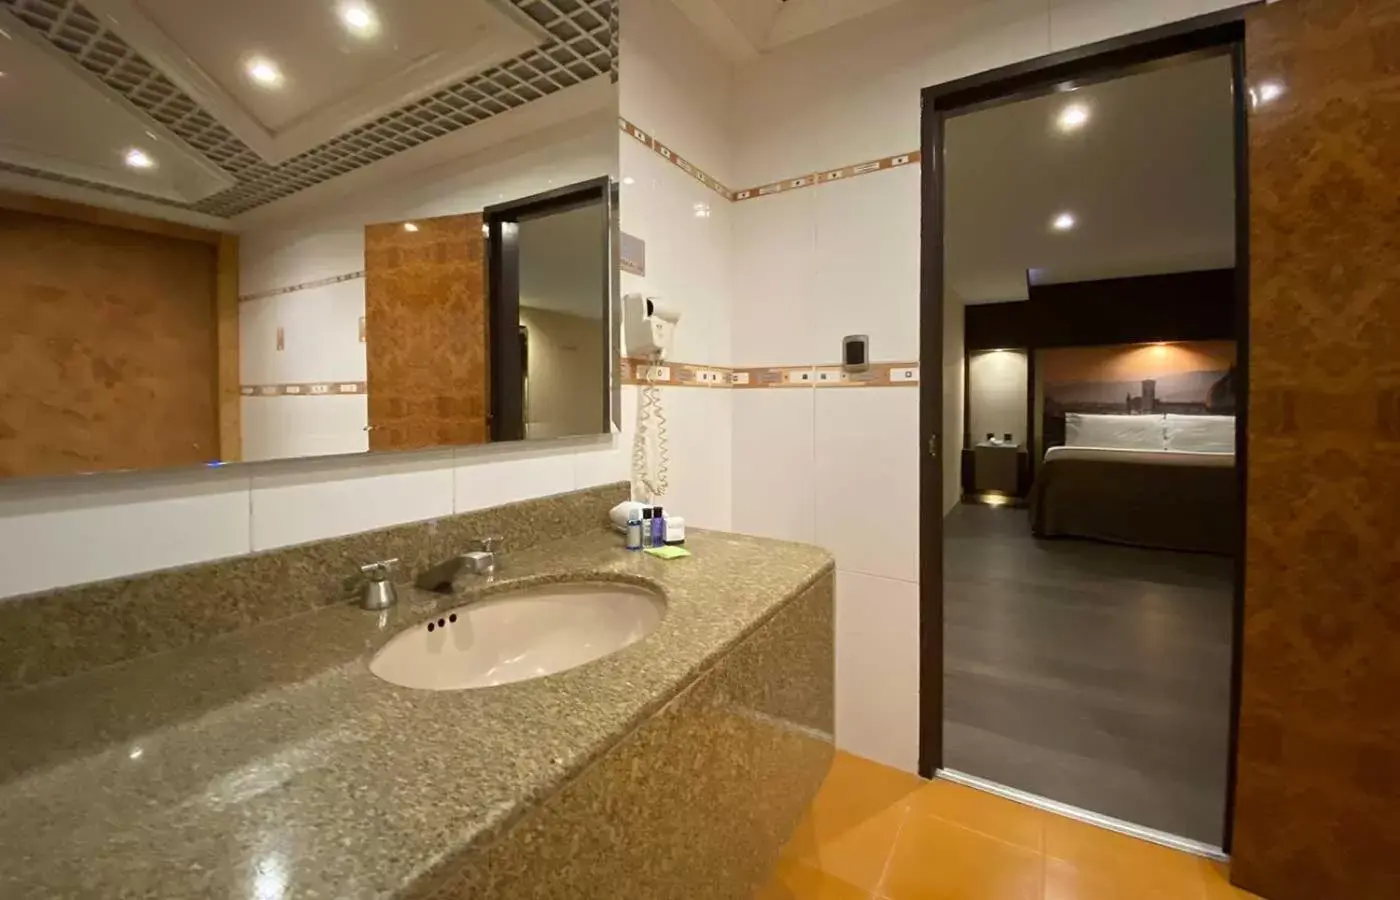 Bathroom in Hotel Escala Central del Norte